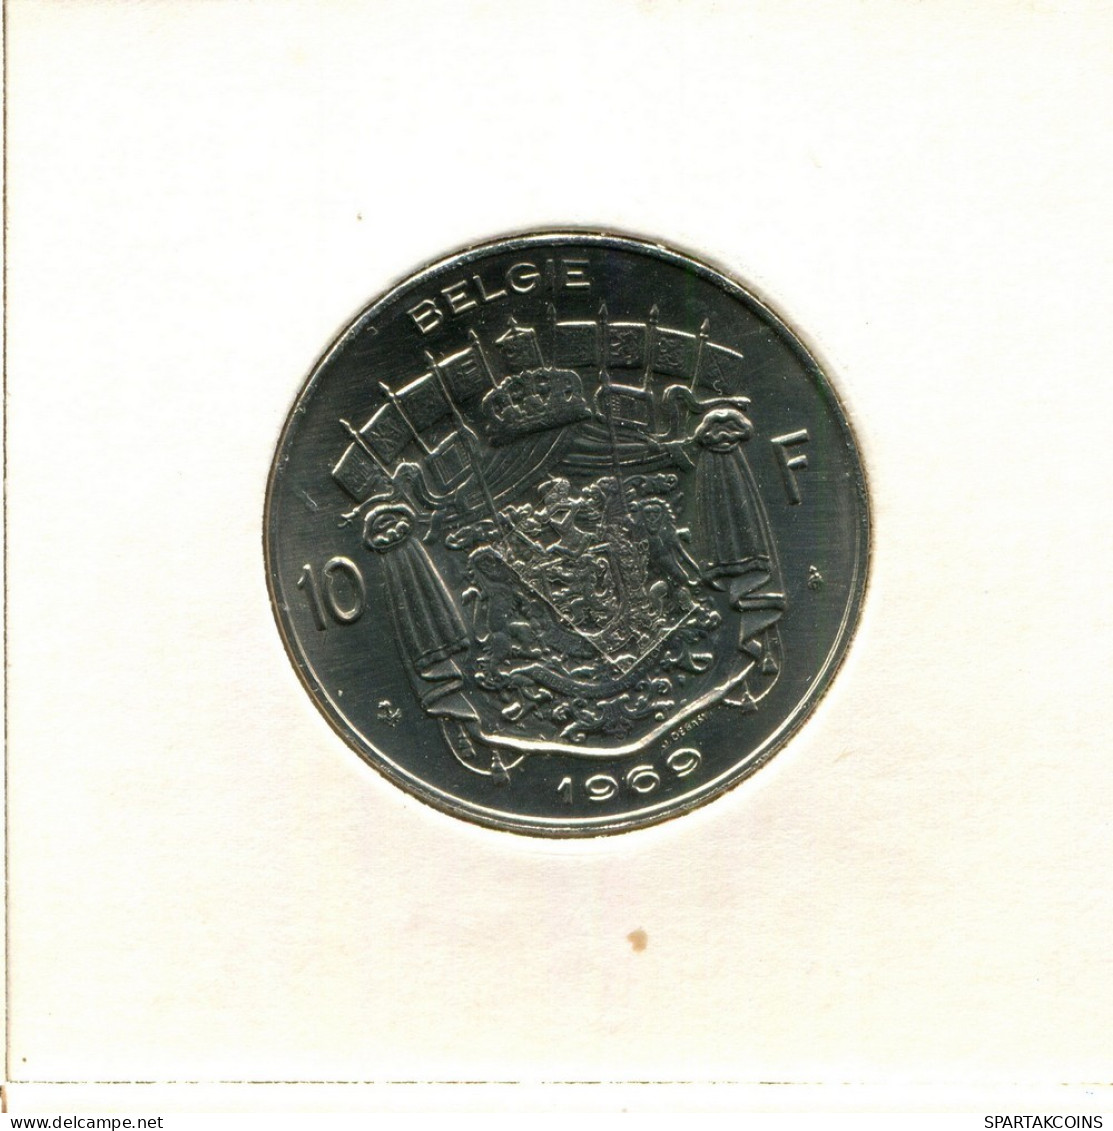 10 FRANCS 1969 DUTCH Text BÉLGICA BELGIUM Moneda #BB237.E.A - 10 Francs